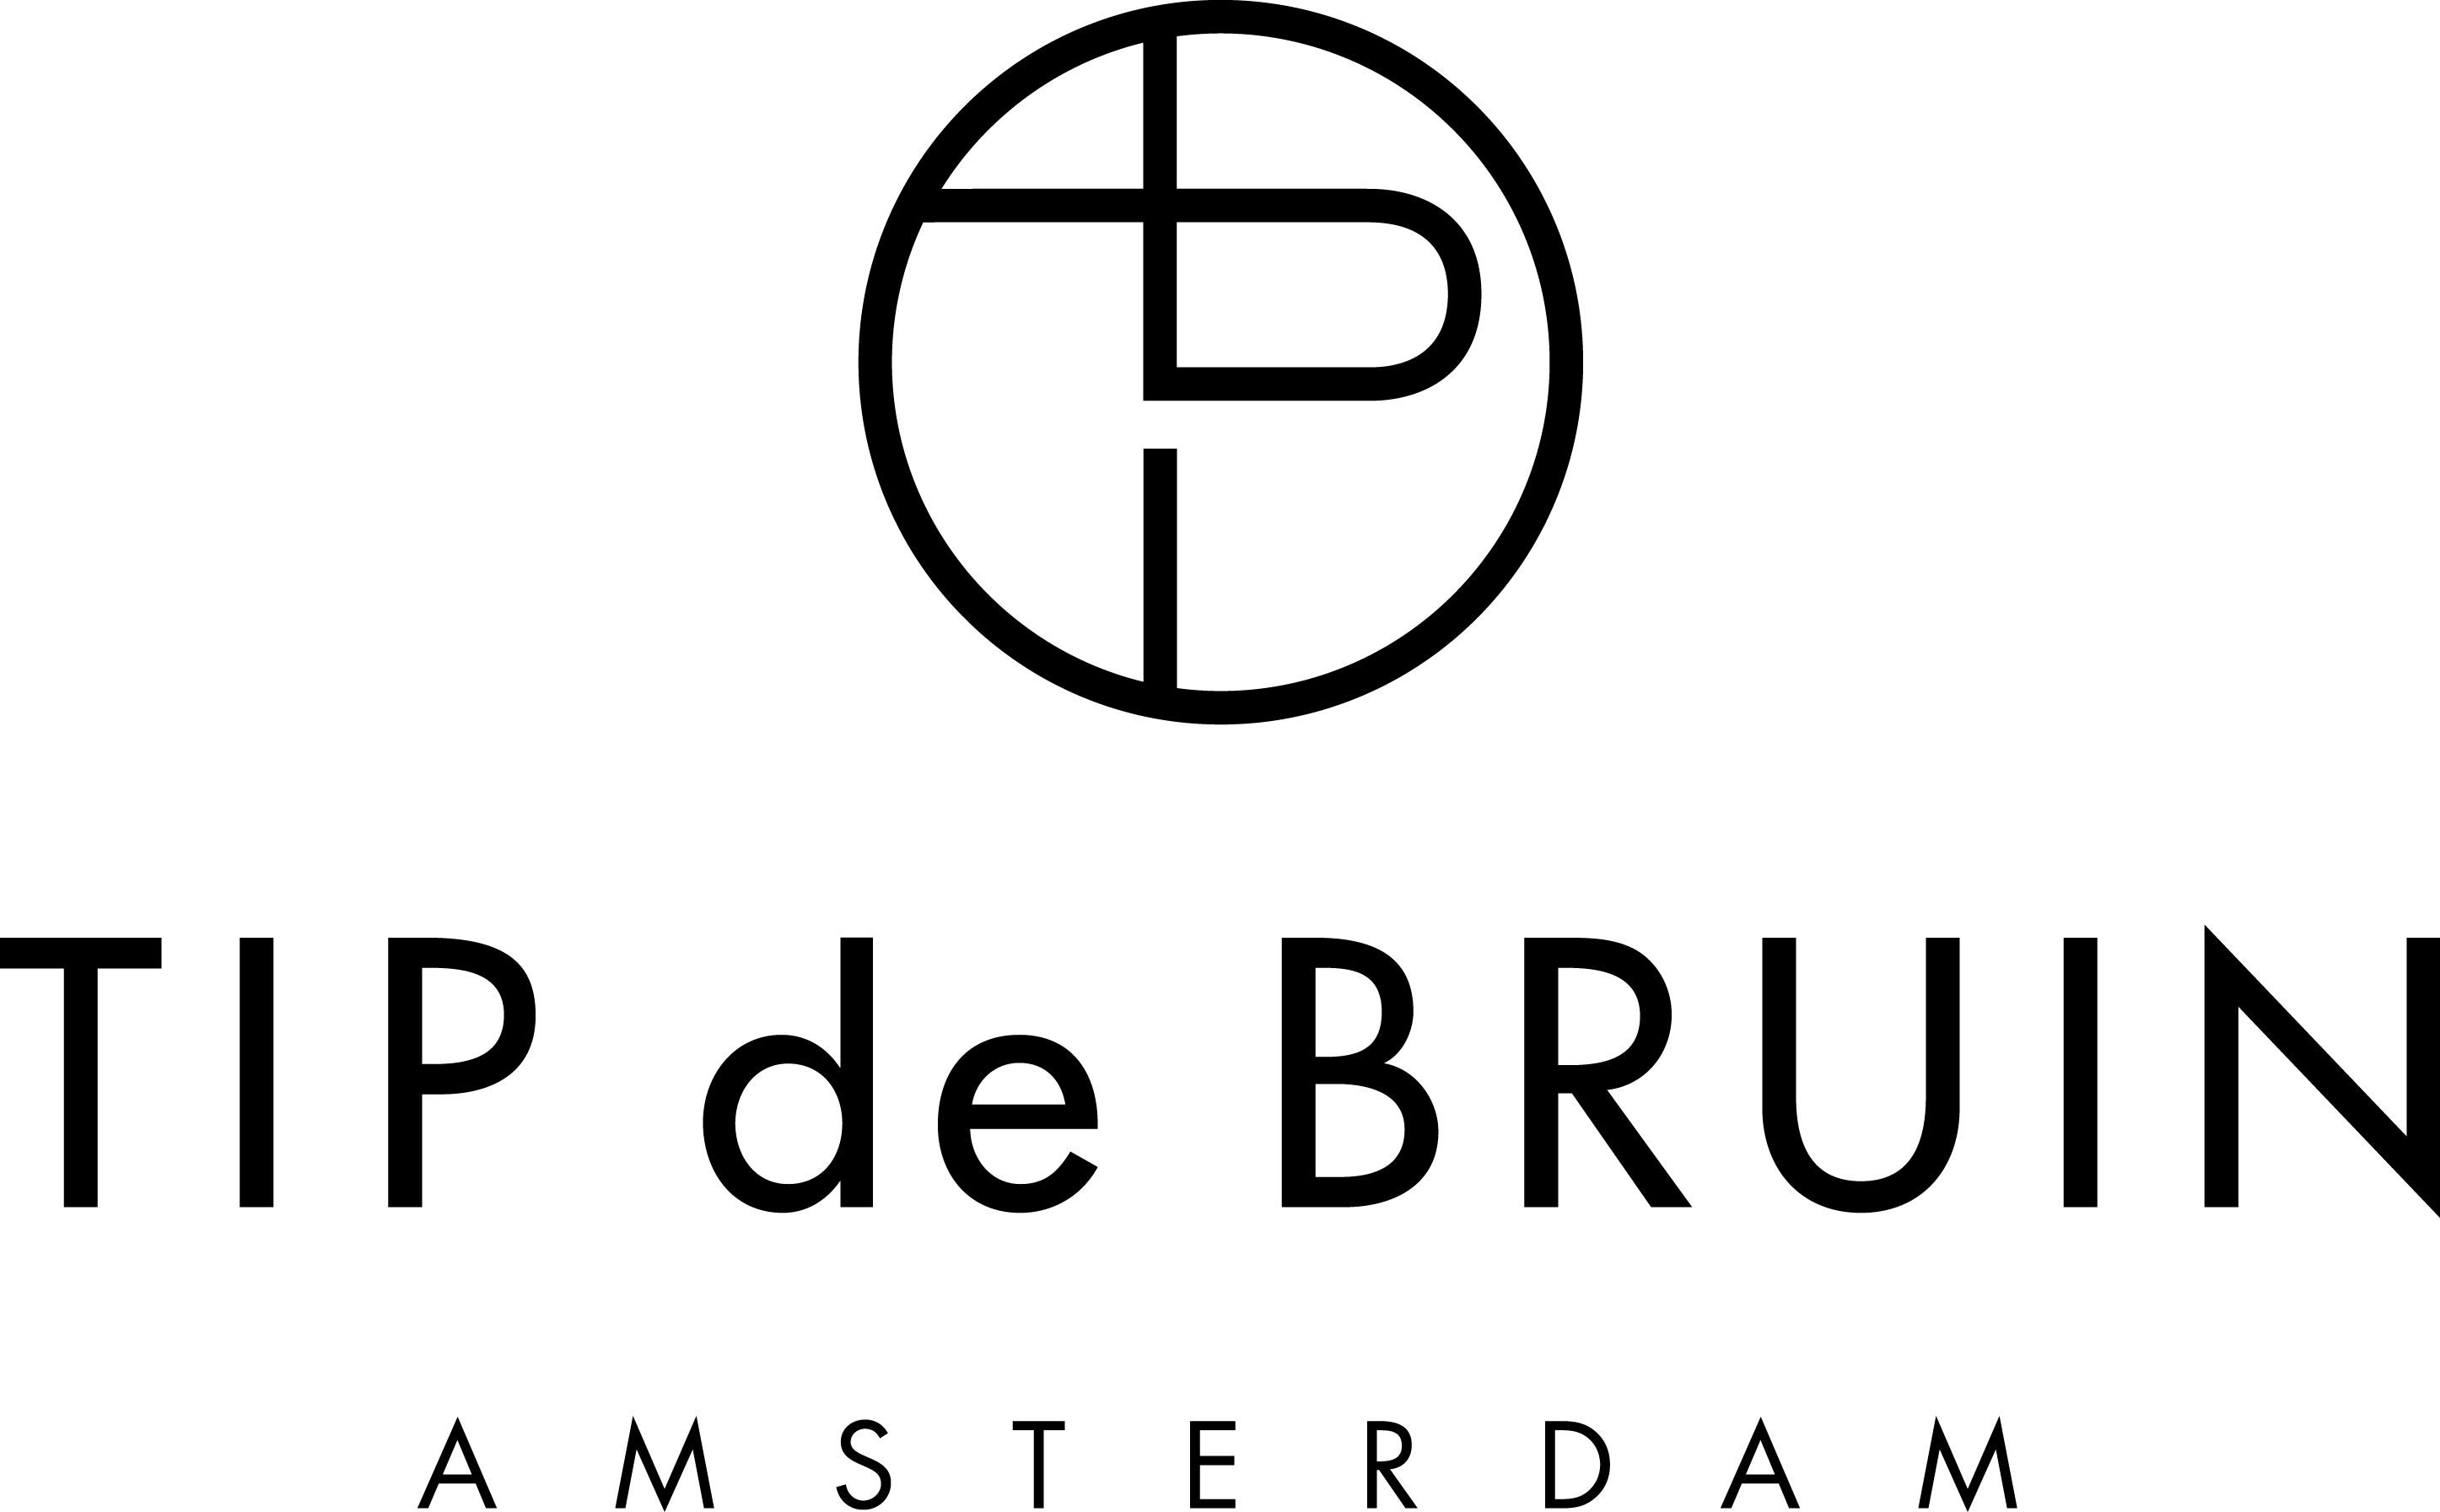 Tip de Bruin Logo